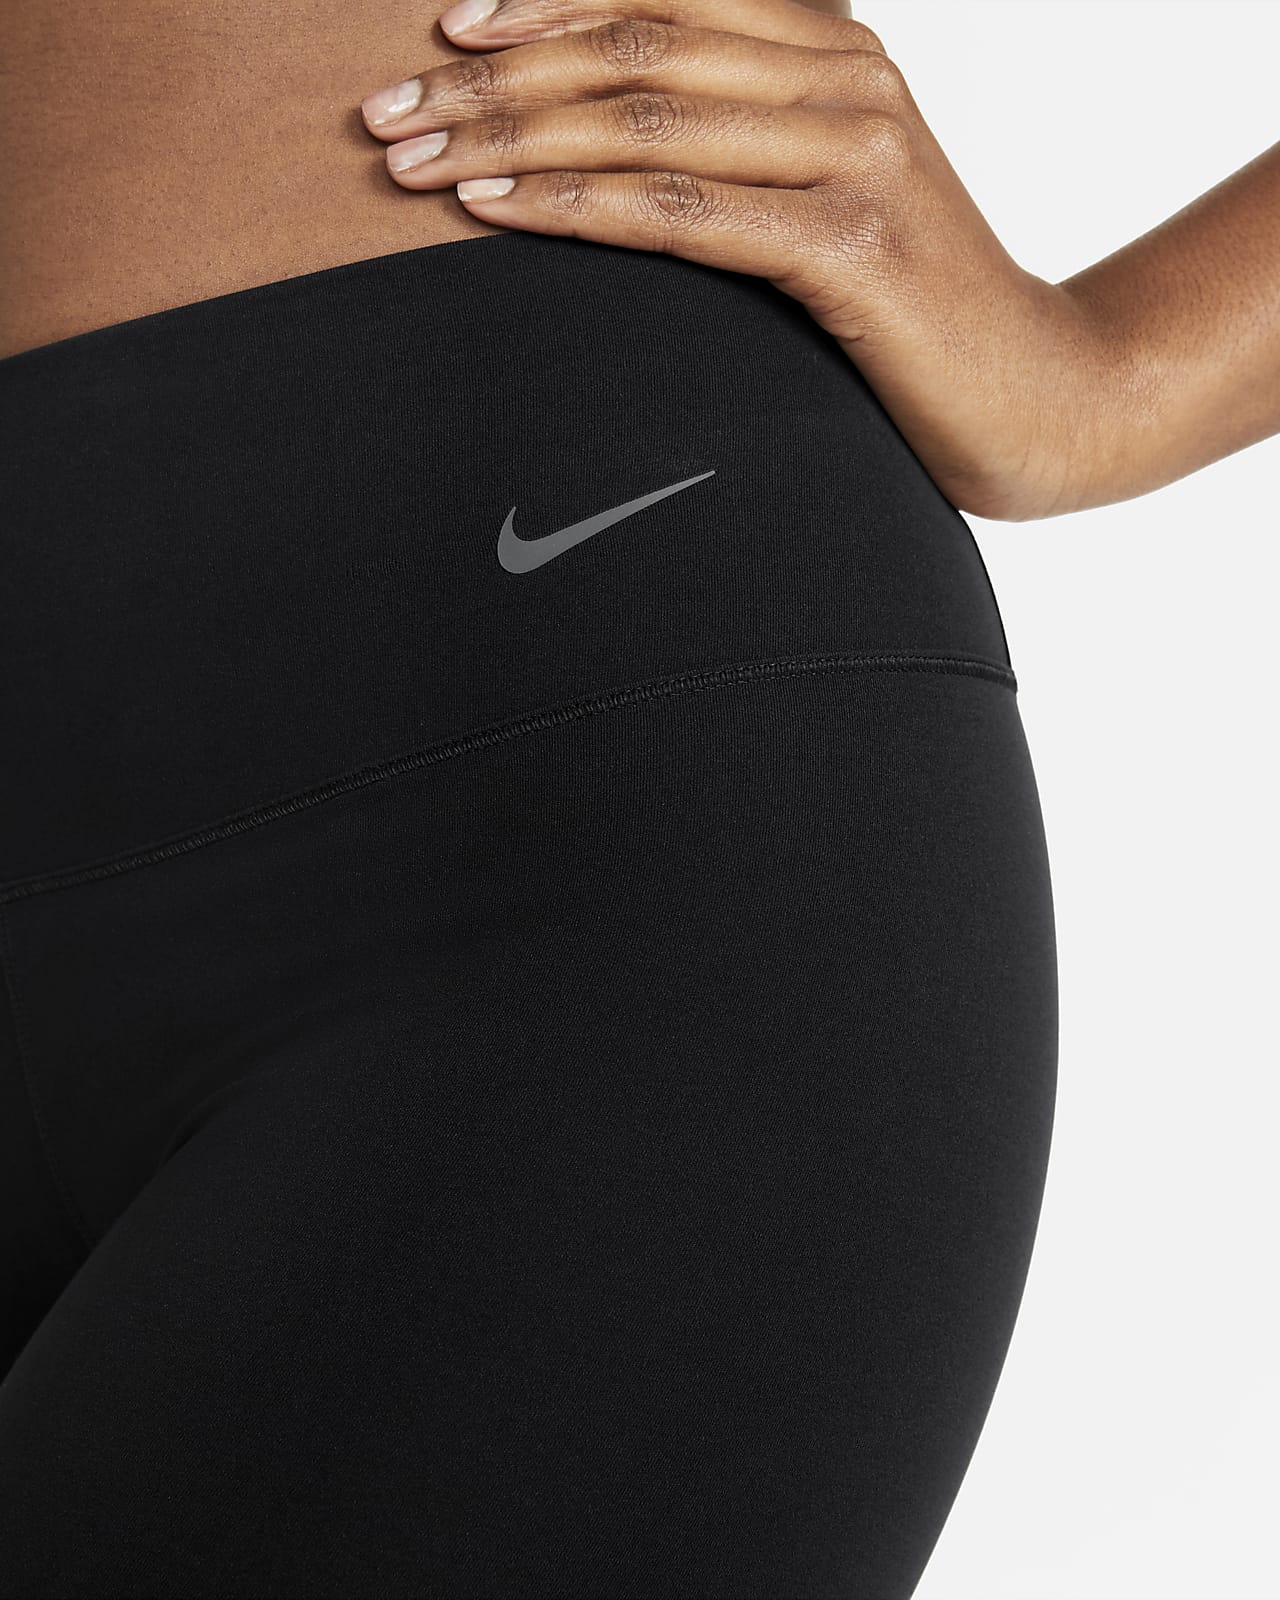 Women's S Small ~ Nike Zenvy Leggings Gentle-Support, High-Waisted,  Full-Length